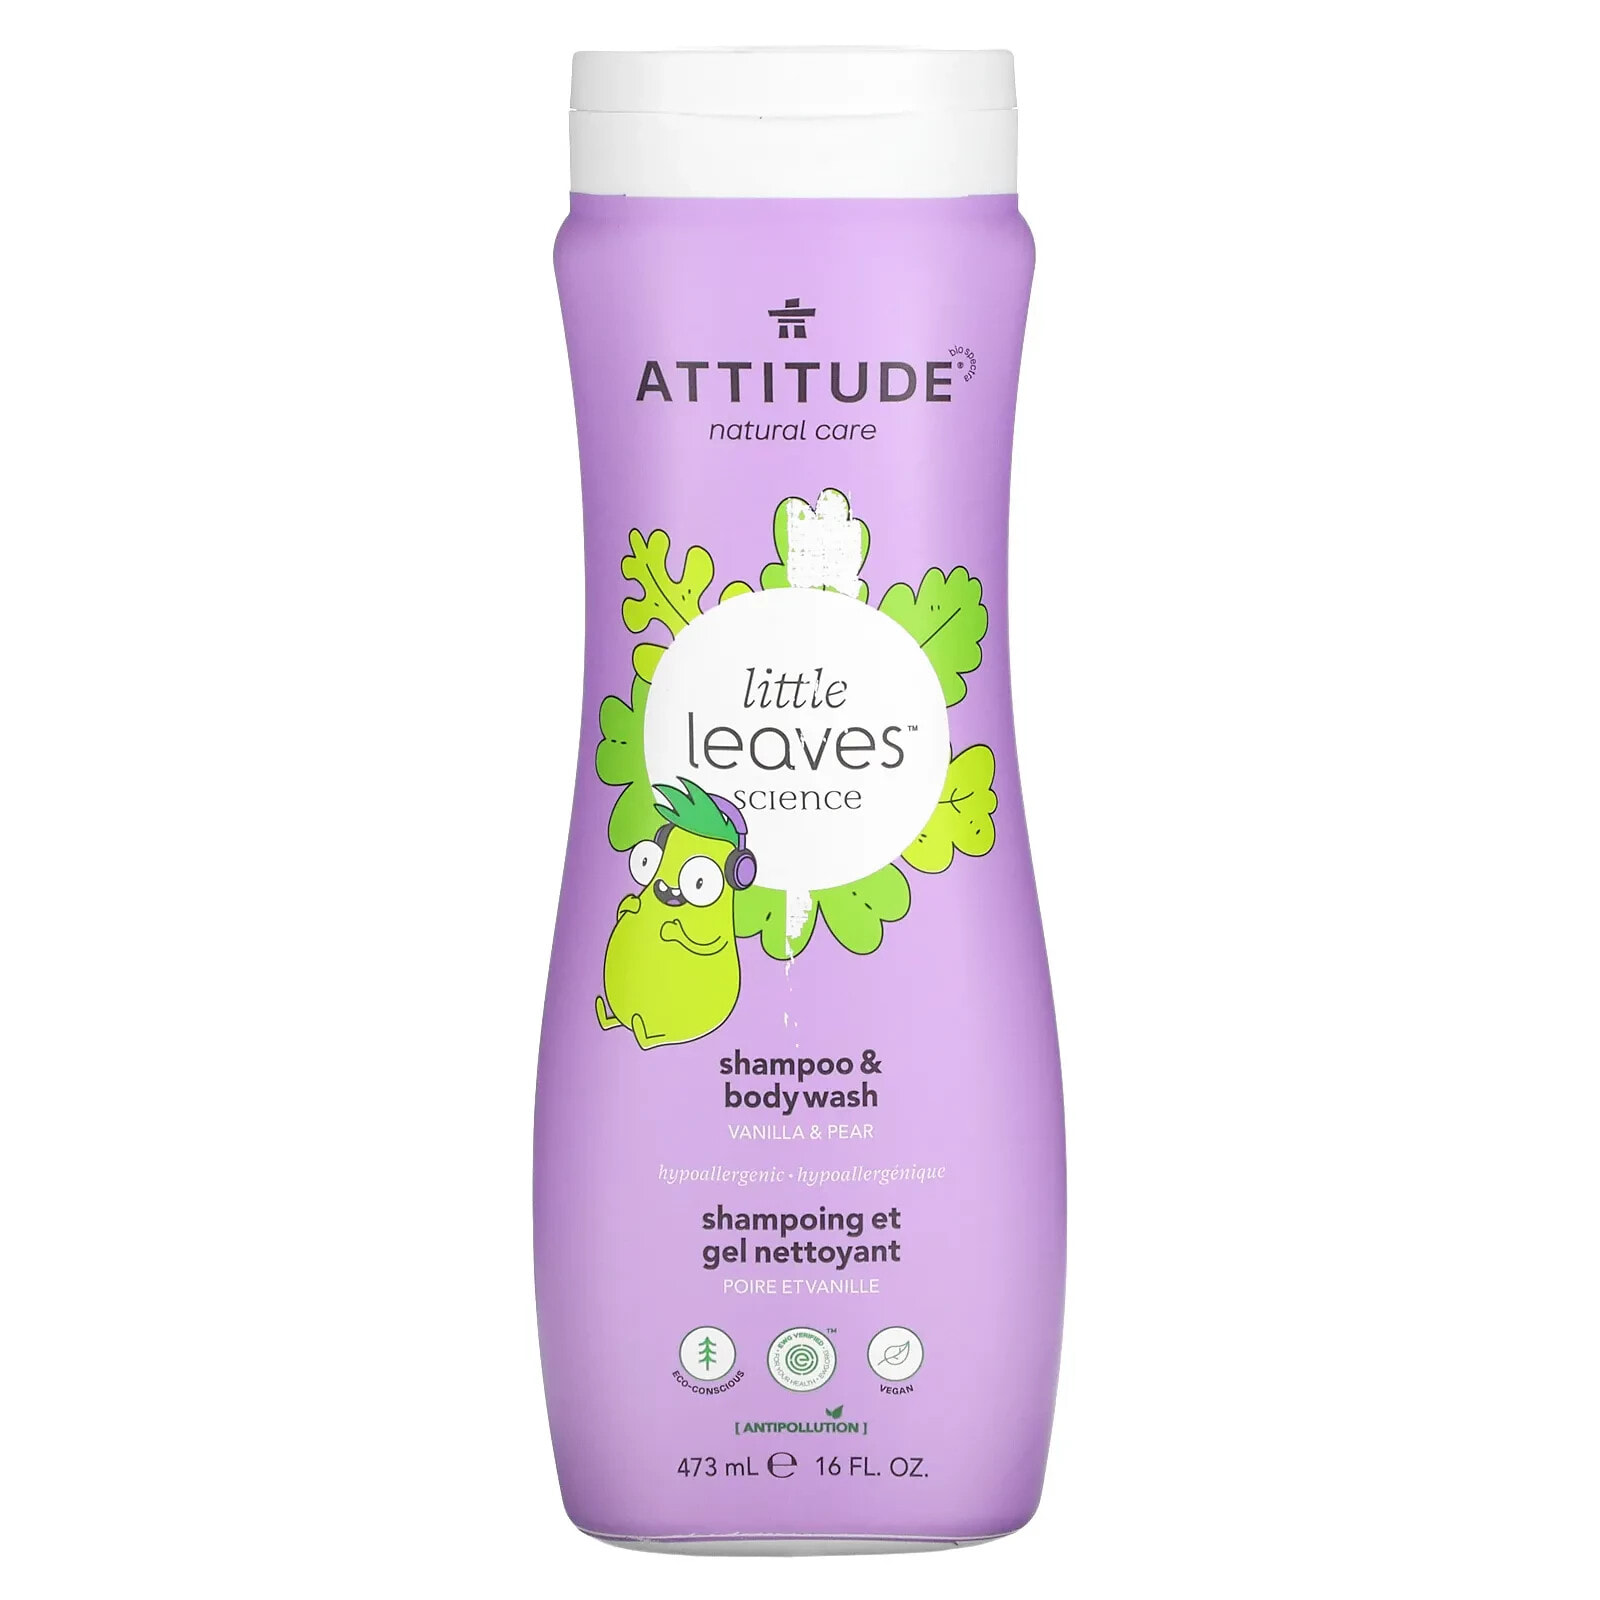 Little Leaves Science, Shampoo & Body Wash, Vanilla & Pear, 16 fl oz (473 ml)